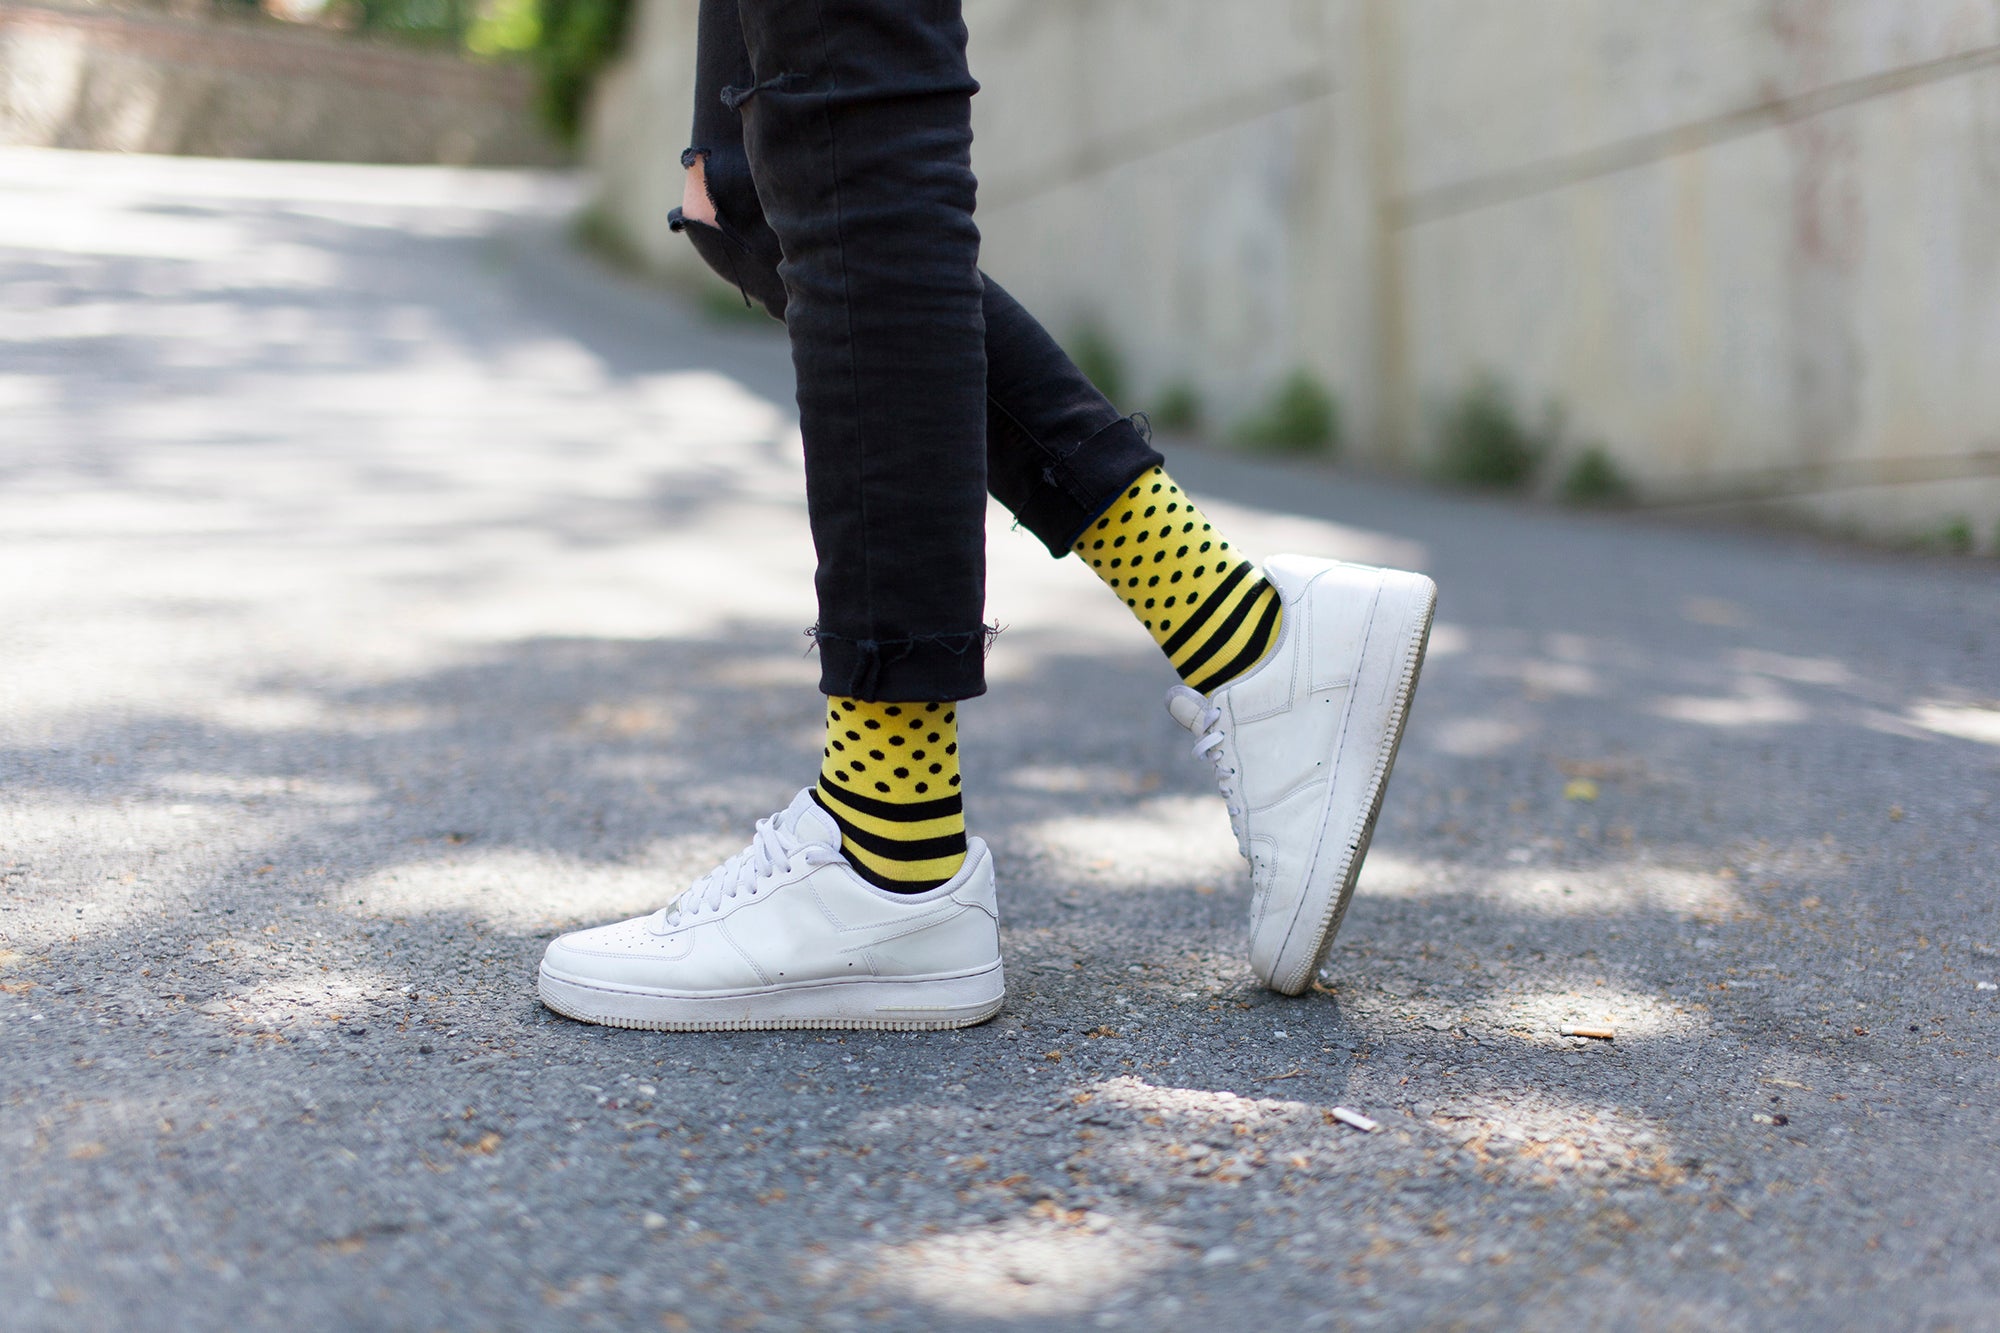 Men's Dot Line Socks